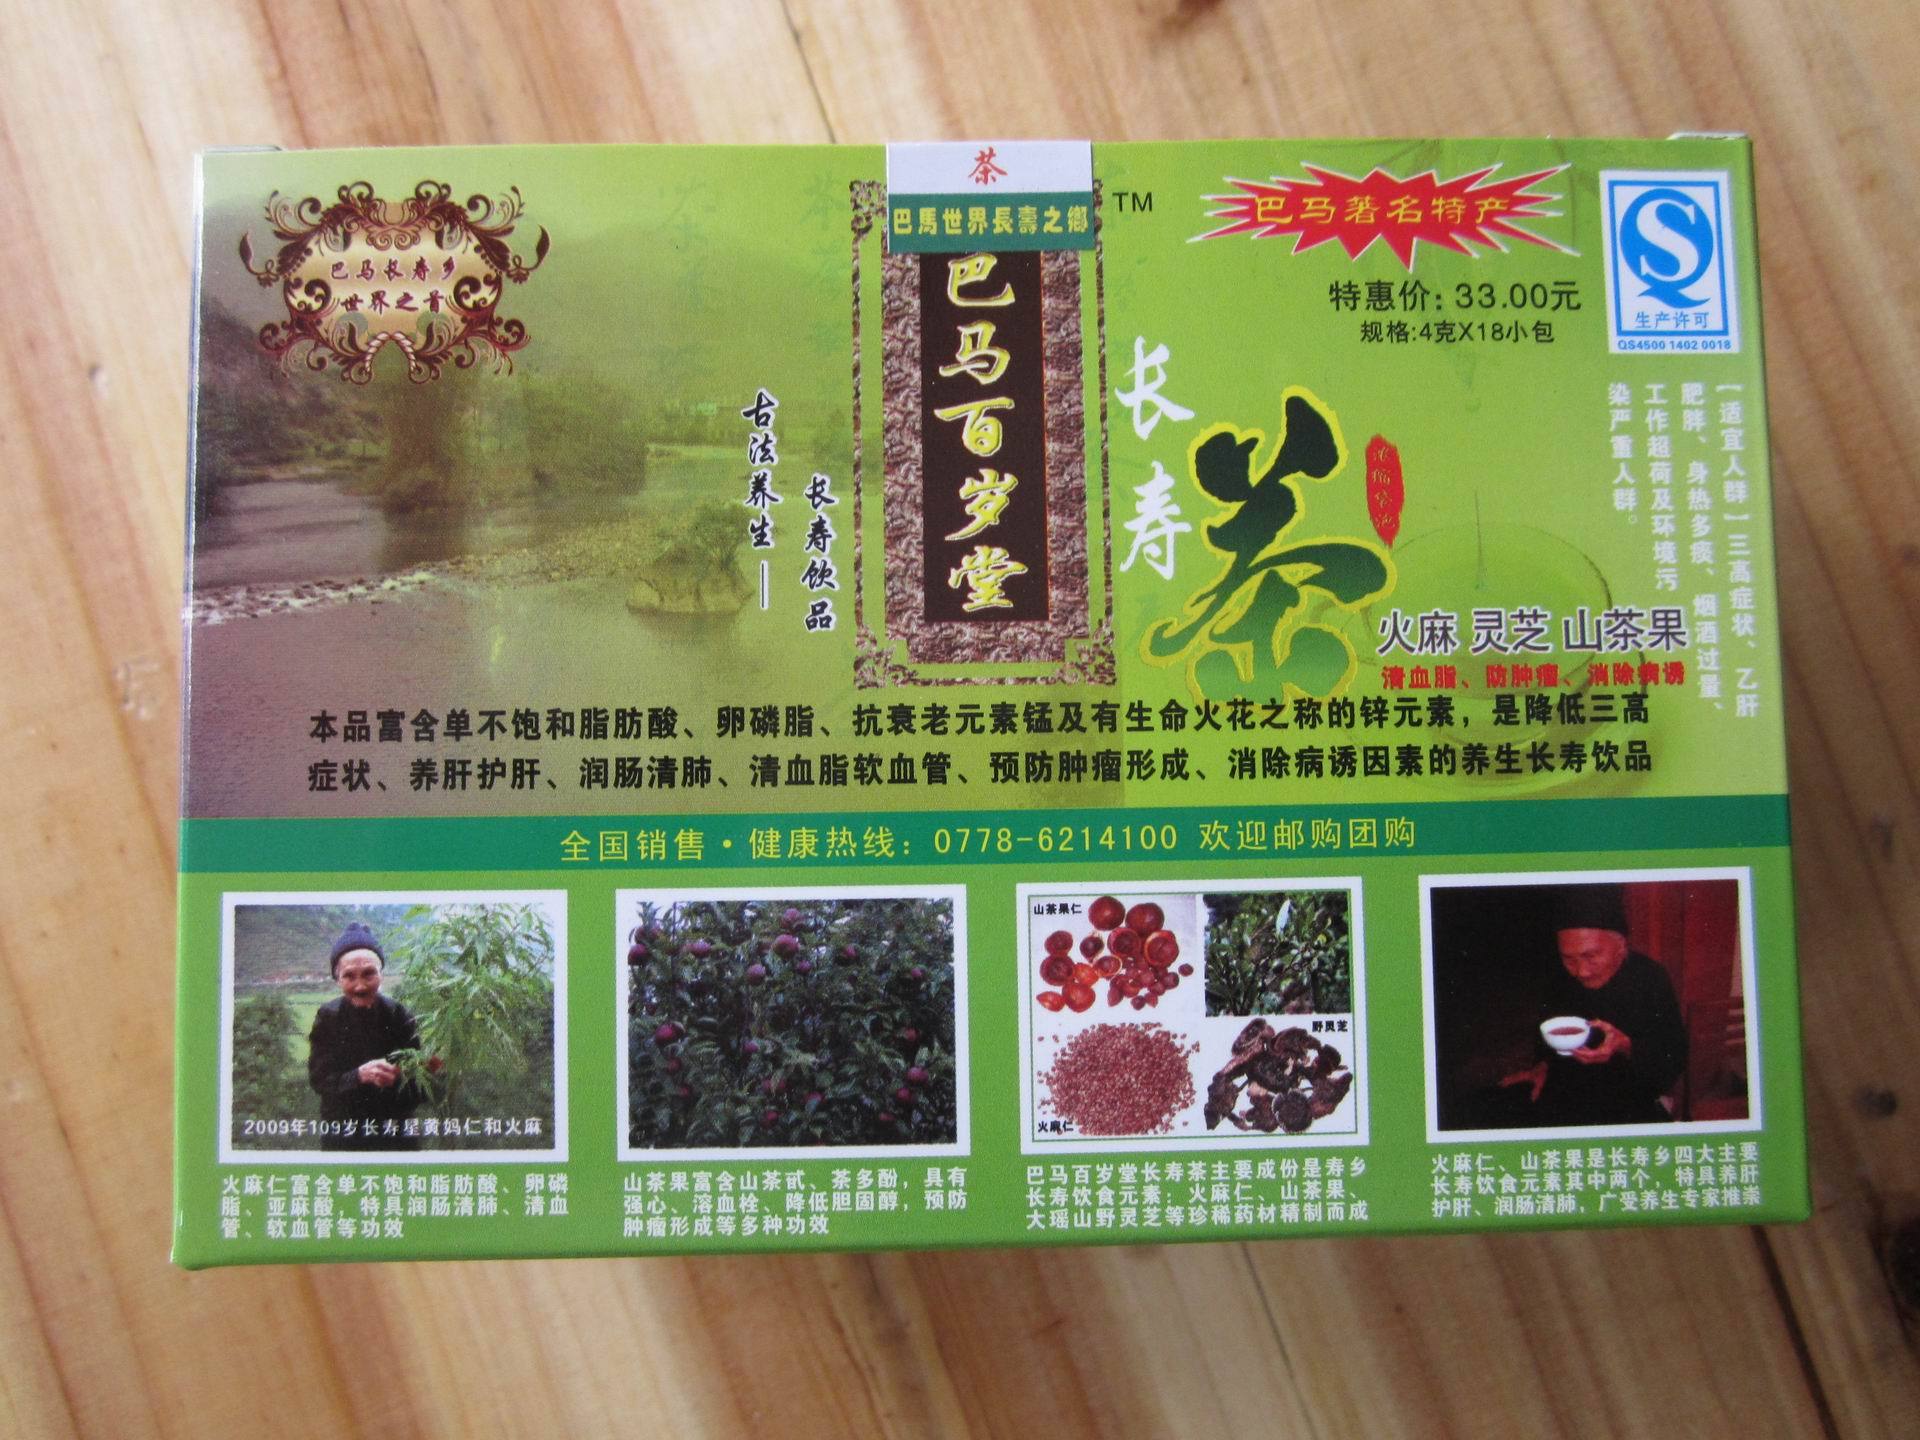 巴马特产长寿火麻茶 原价33现30送彩印《火麻养生食疗菜谱》